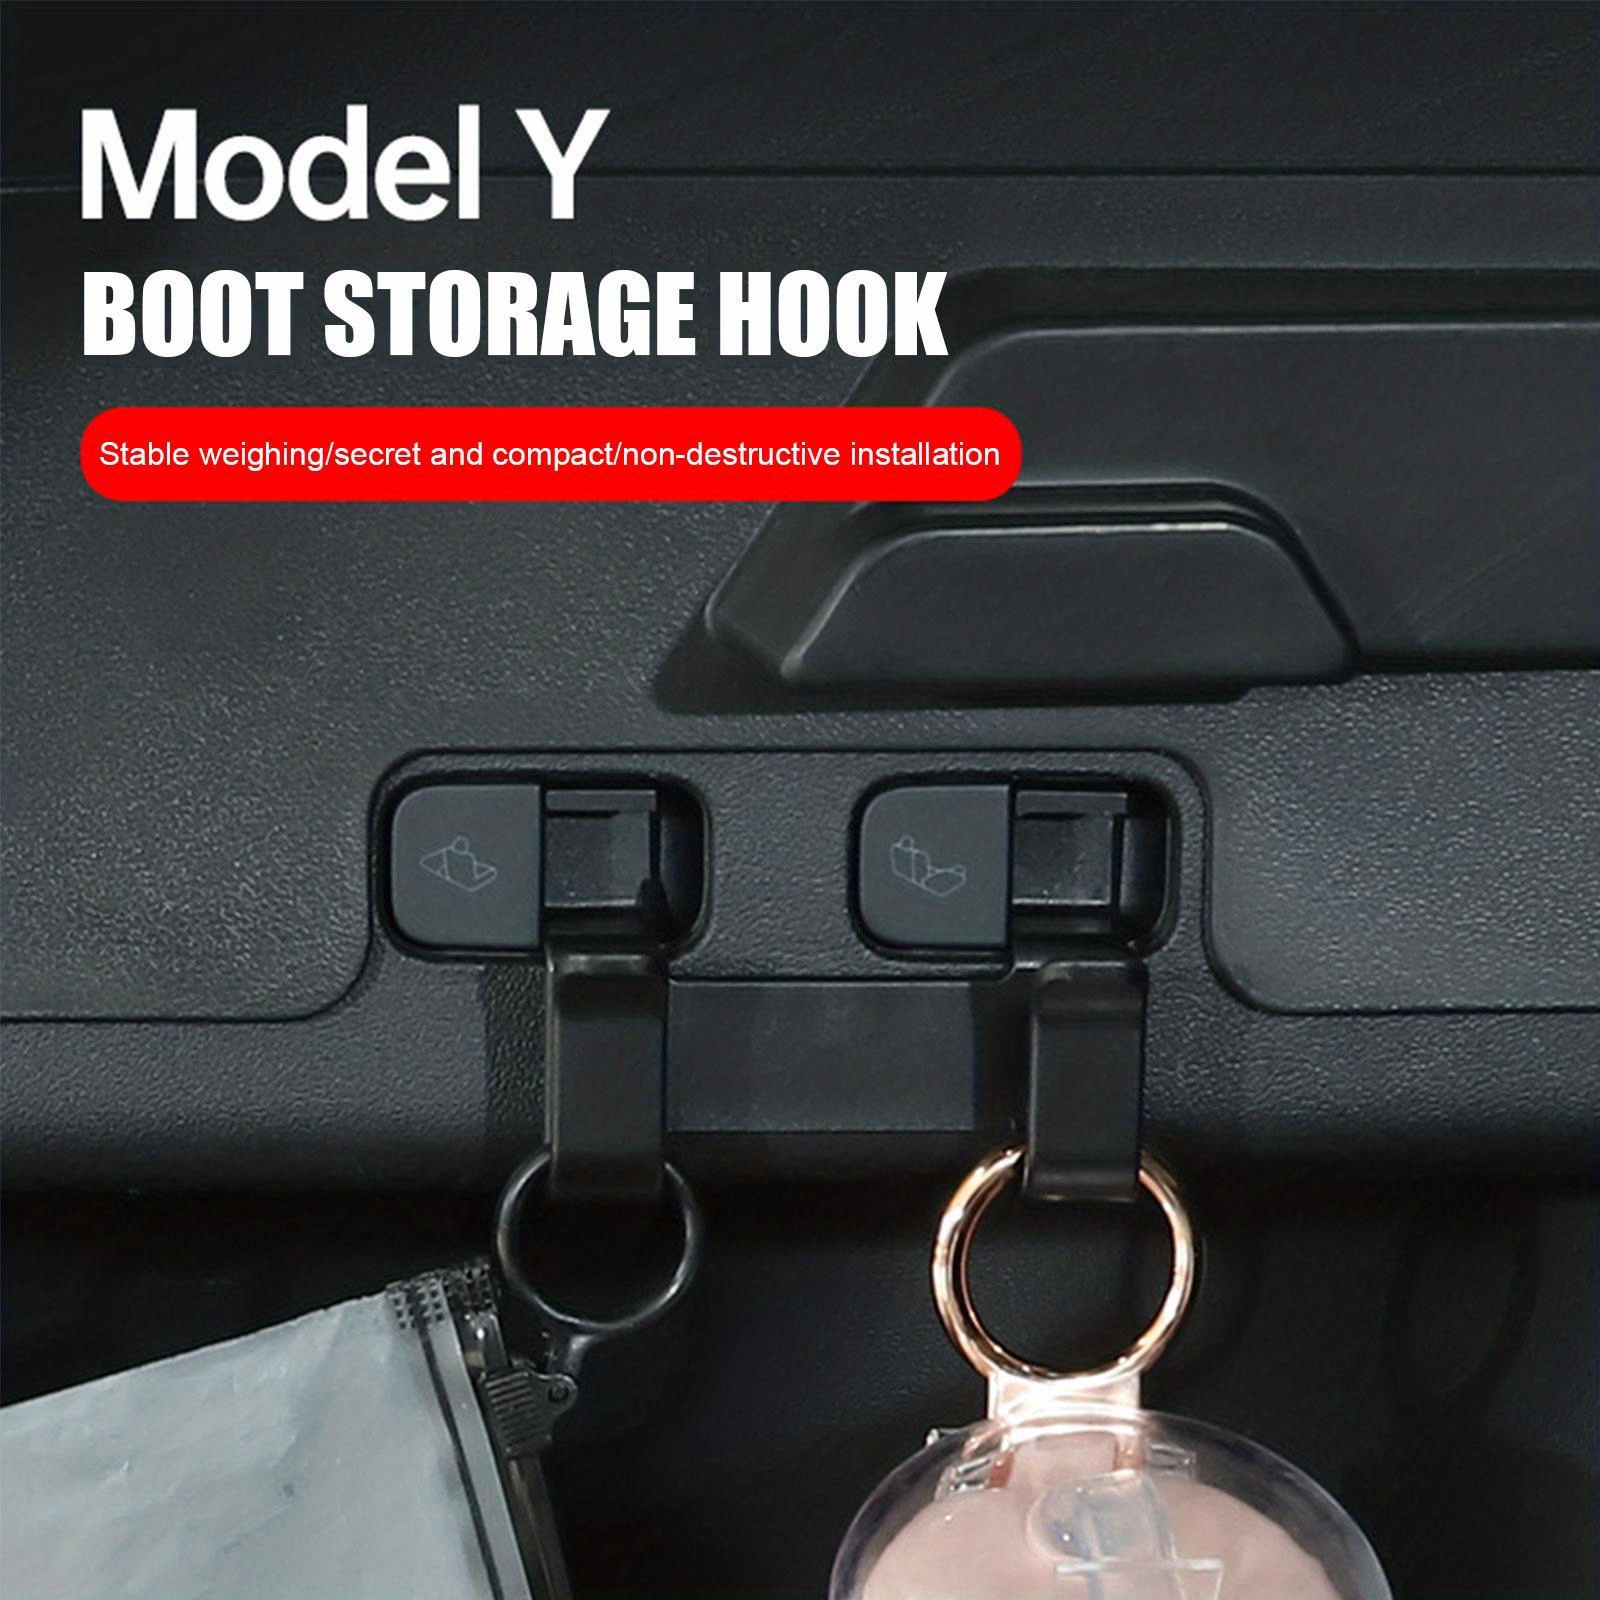 Tesla Model 3 Kofferraum Haken für Einkaufstaschen – Tesla Ausstatter